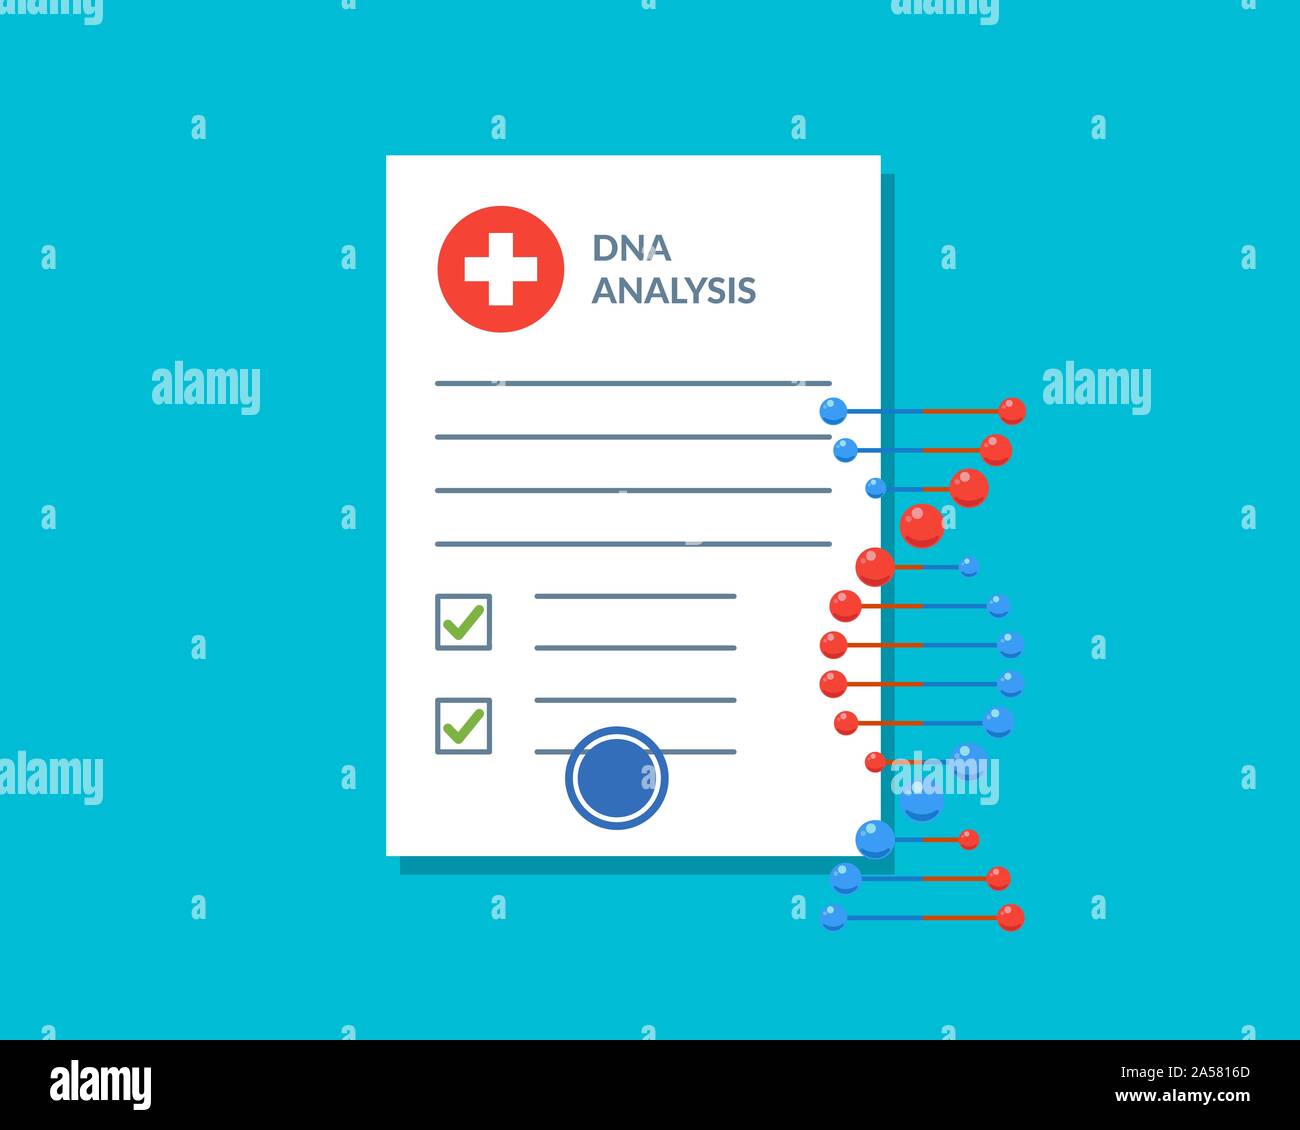 DNA-Analyse Testergebnis Dokument Checkliste leer mit molekularer Struktur Desoxyribonukleinsäure Spirale. Wissenschaftliche Berichtseite für Patienten im medizinischen Labor. Genetische Information Vektor blaue Farbe Illustration Stock Vektor